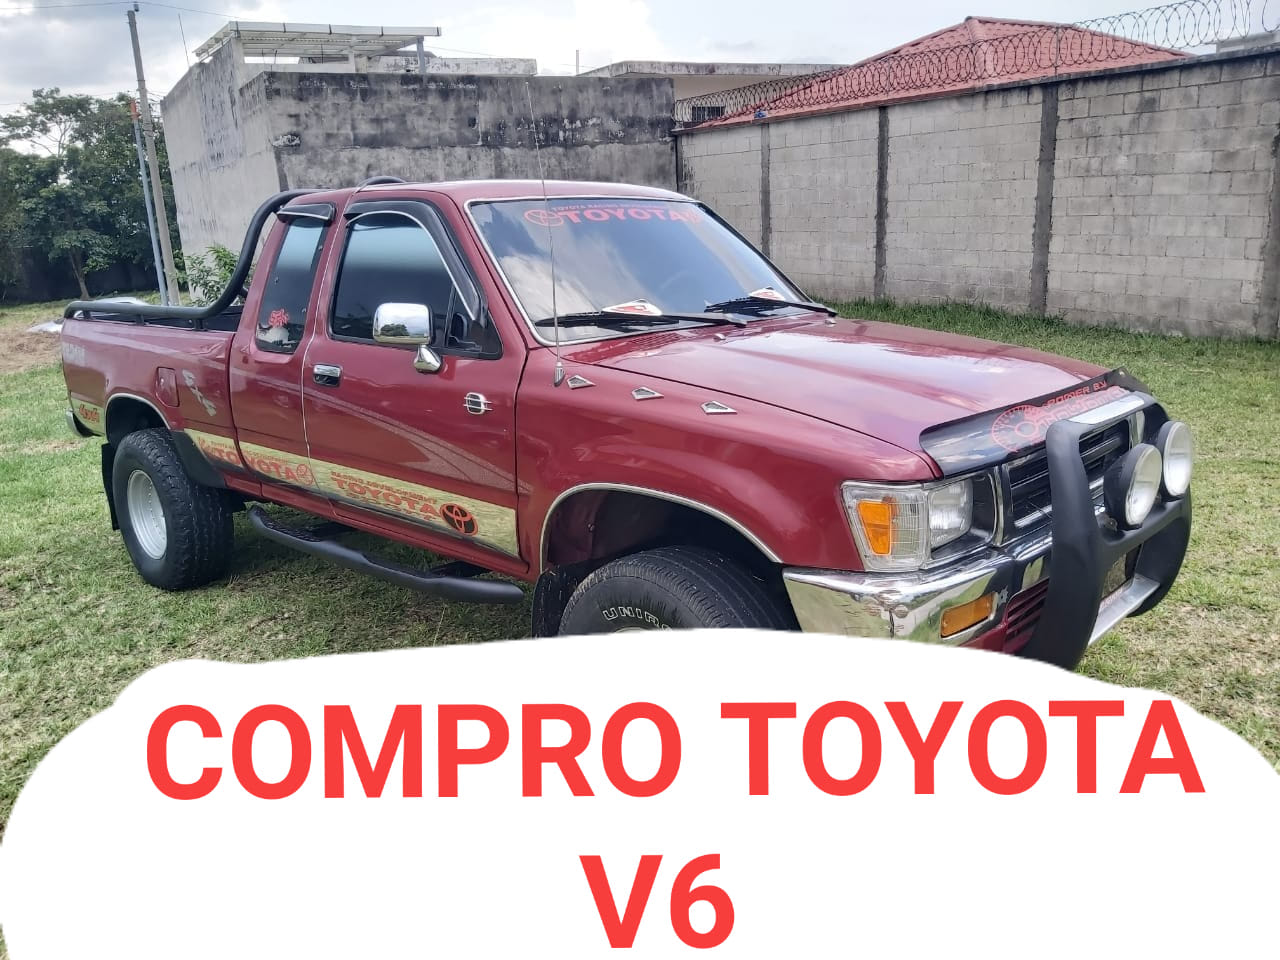 COMPRO A PRECIO DE REMATE TOYOTA V6